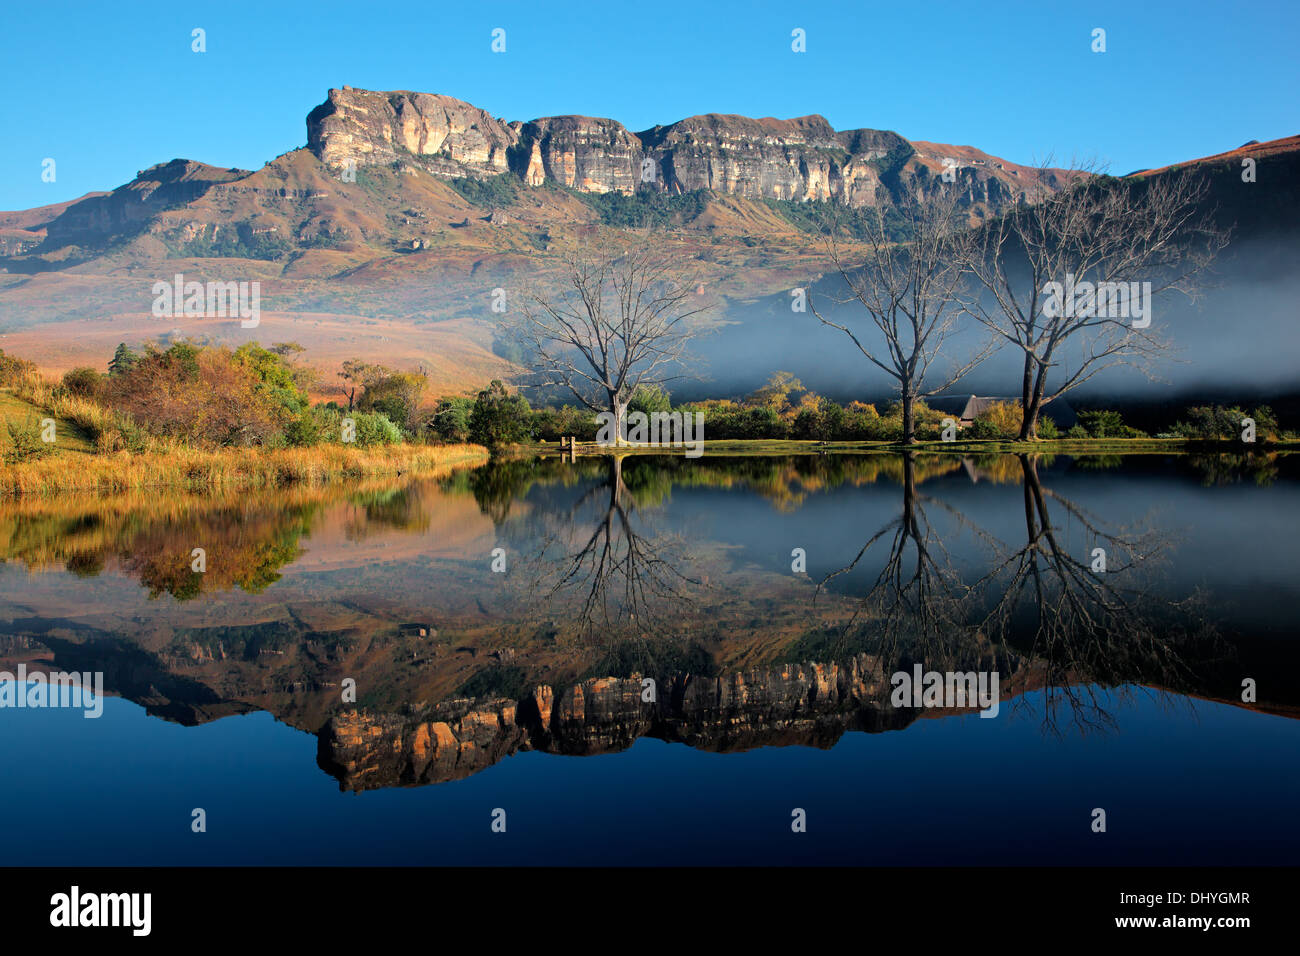 Des montagnes de grès avec réflexion symétrique dans l'eau, Parc national royal Natal, Afrique du Sud Banque D'Images